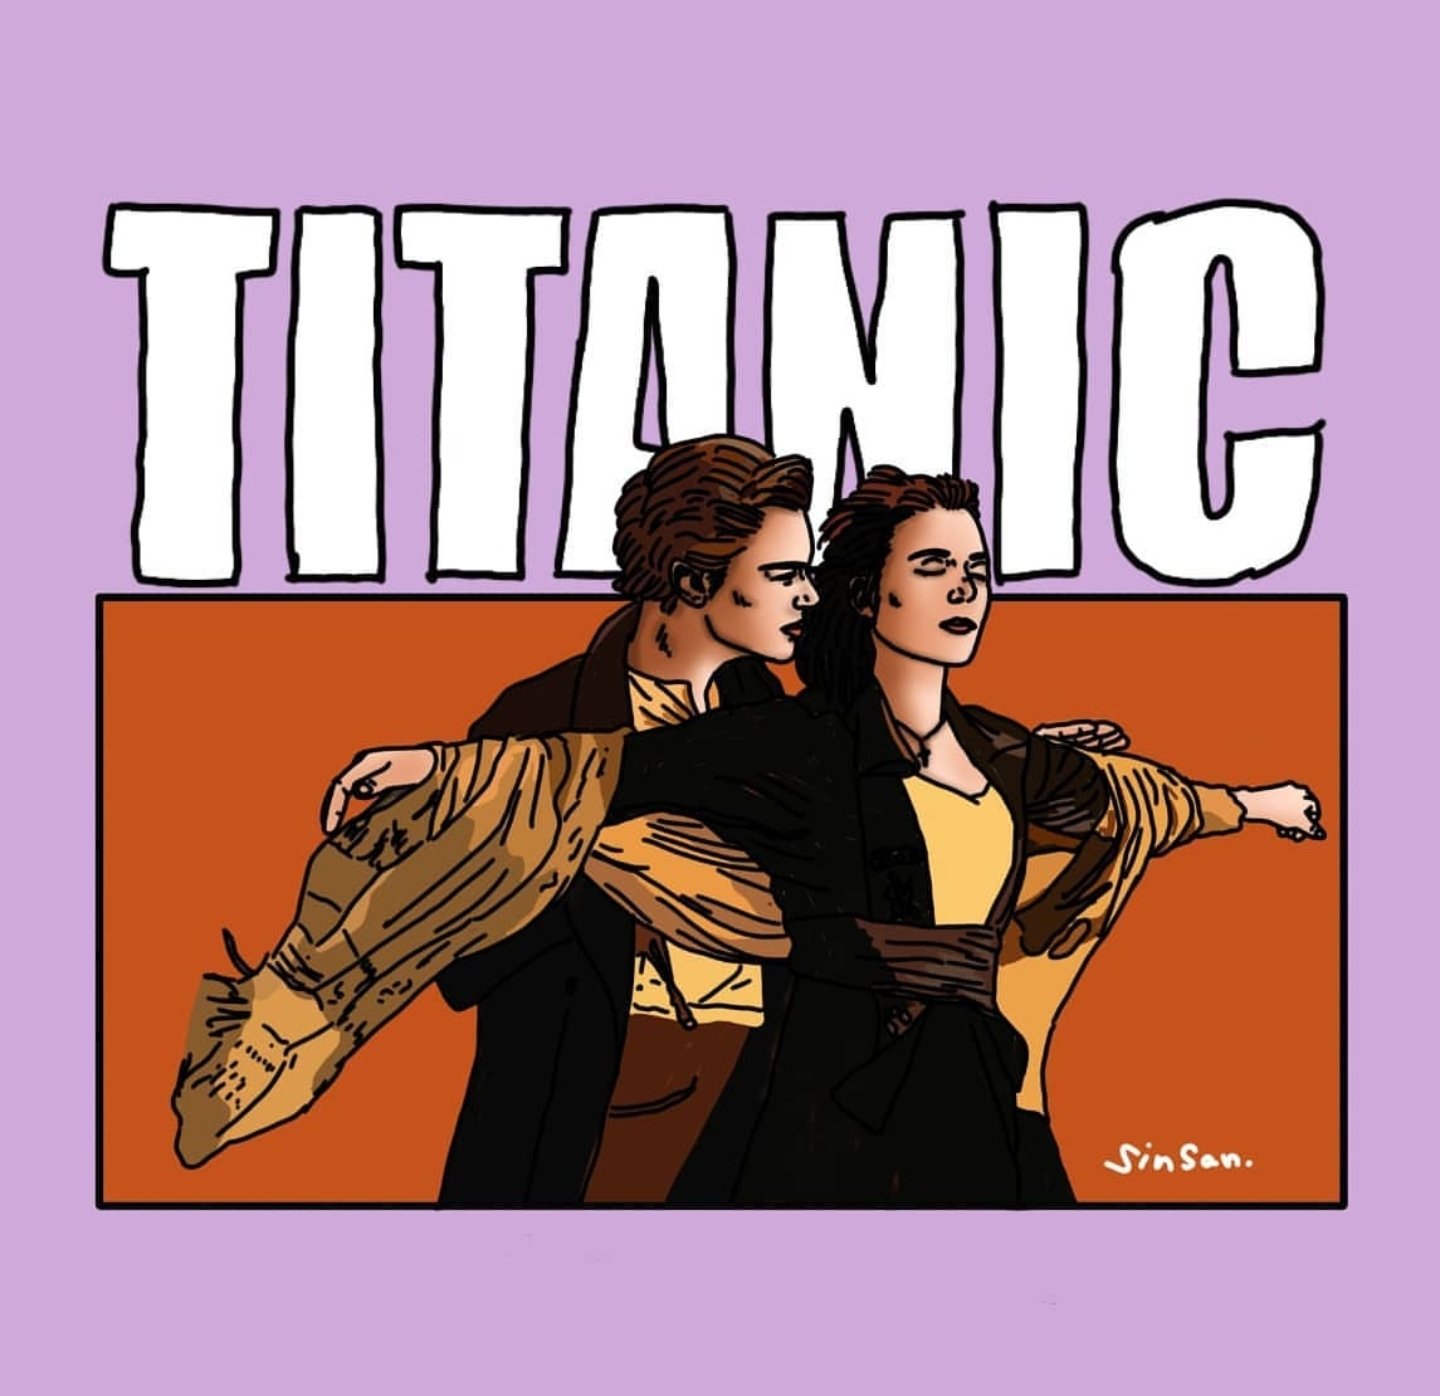 Sinsan タイタニックのワンシーンを描いてみたよ タイタニック Titanic 似顔絵 イラスト 映画 Sinsan T Co Vswtli4wy8 Twitter